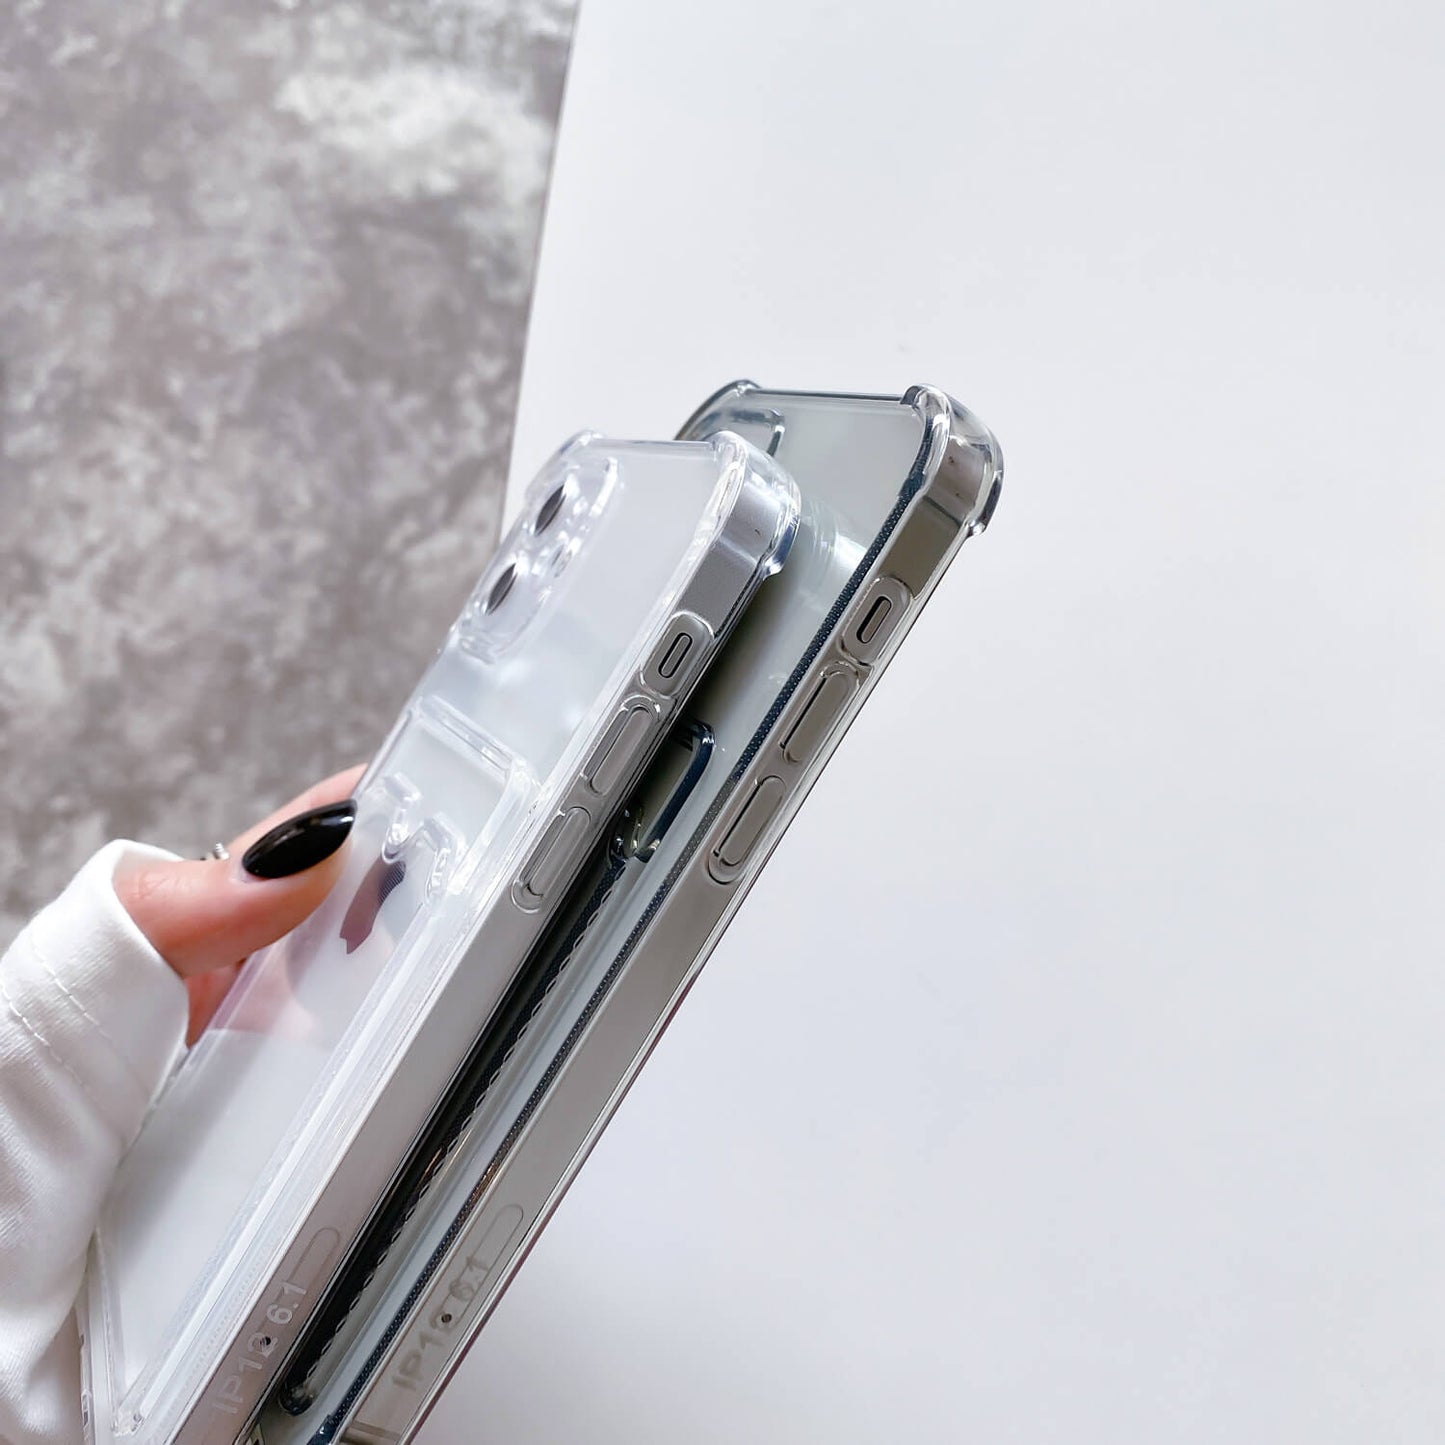 Anti-chute coloré transparent avec fente pour carte Coque et skin iPhone